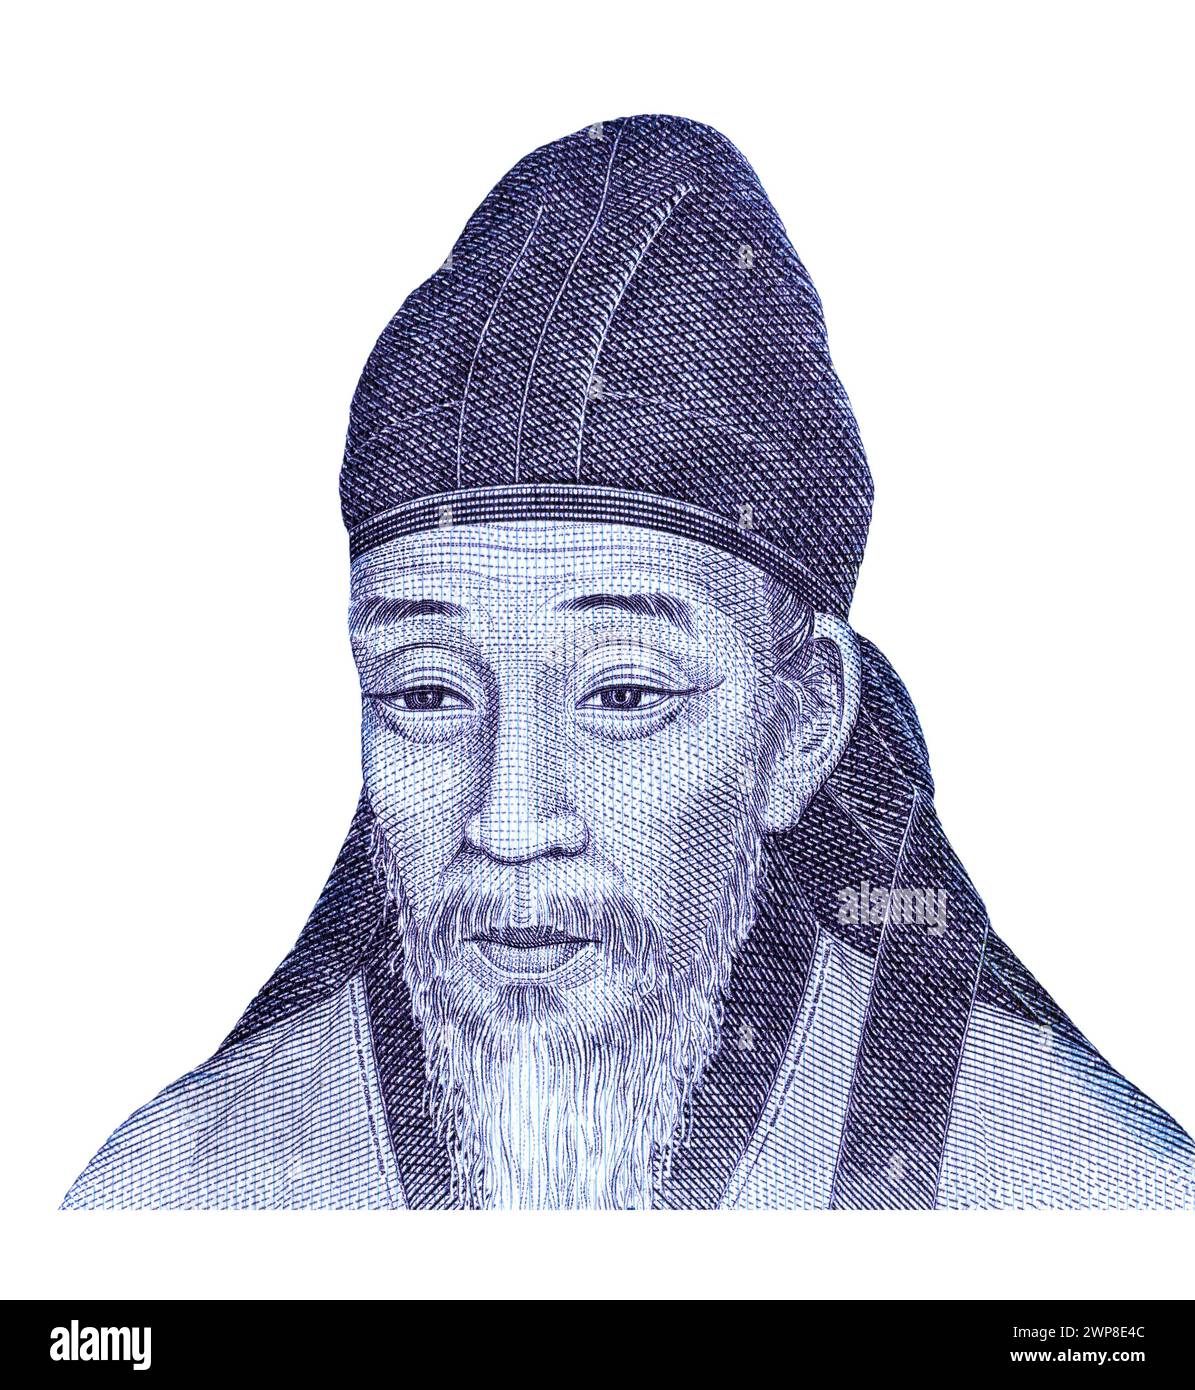 Yi Hwang Porträt (1501–1570) aus Südkorea 1000 Won-Banknote. Koreanischer Philosoph, Schriftsteller und konfuzianischer Gelehrter der Joseon-Dynastie Stockfoto